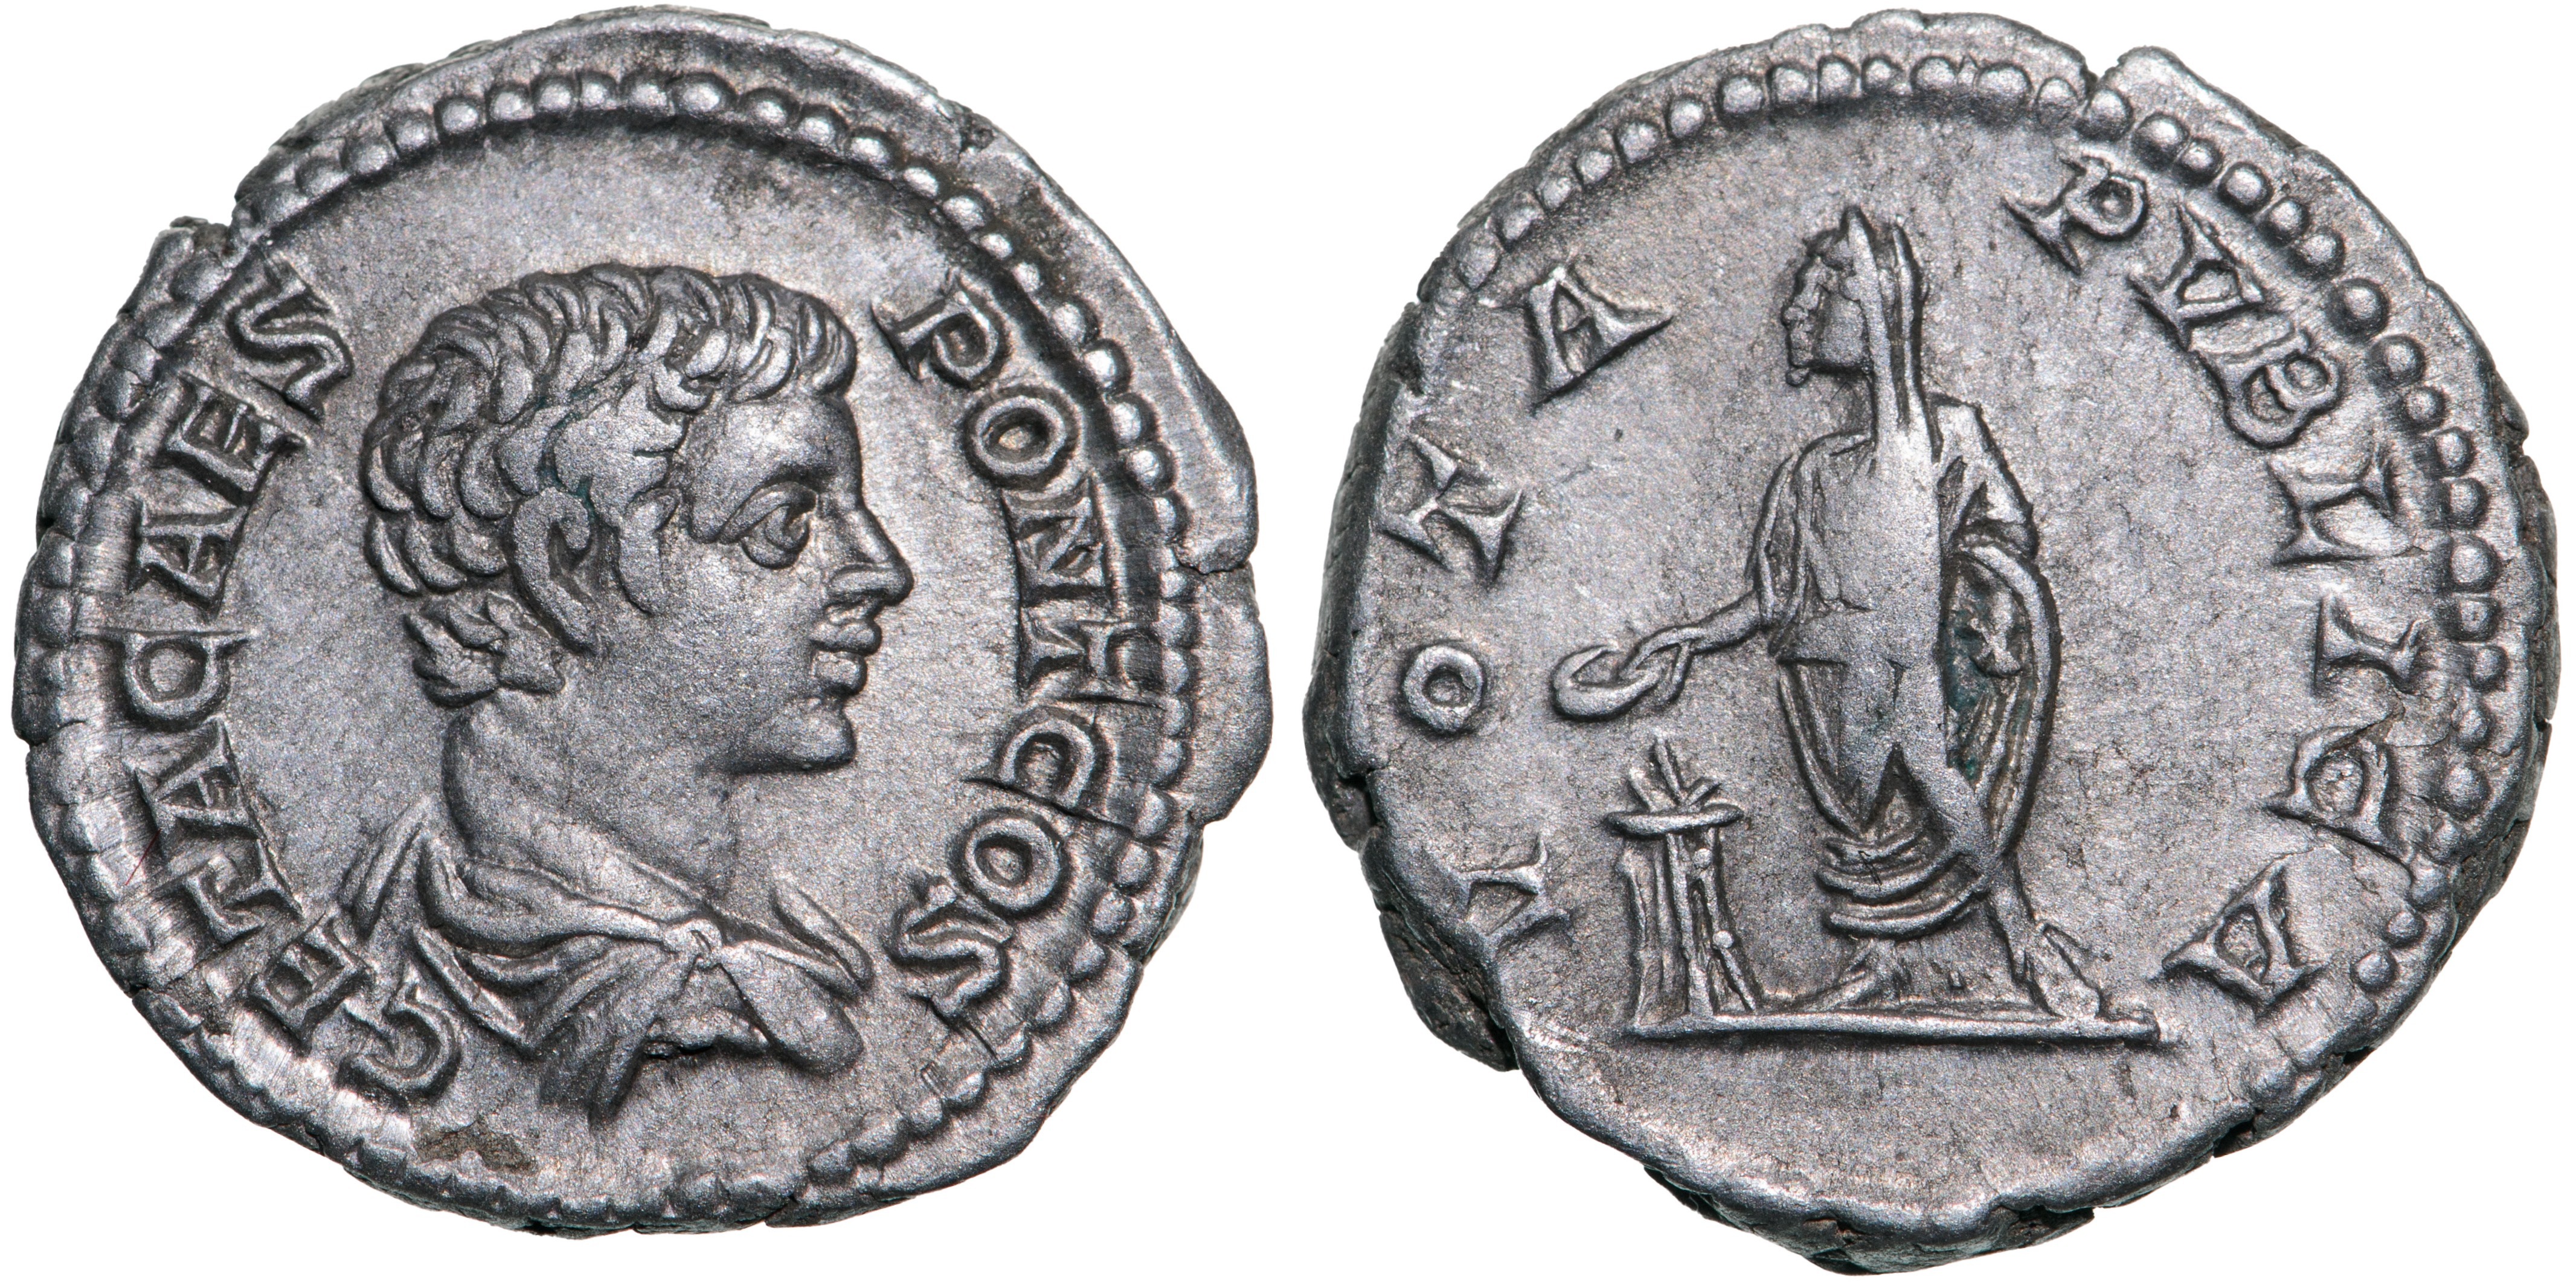 Geta (198-209 AD), AR Denarius (3.15g), struck 205 AD, Rome